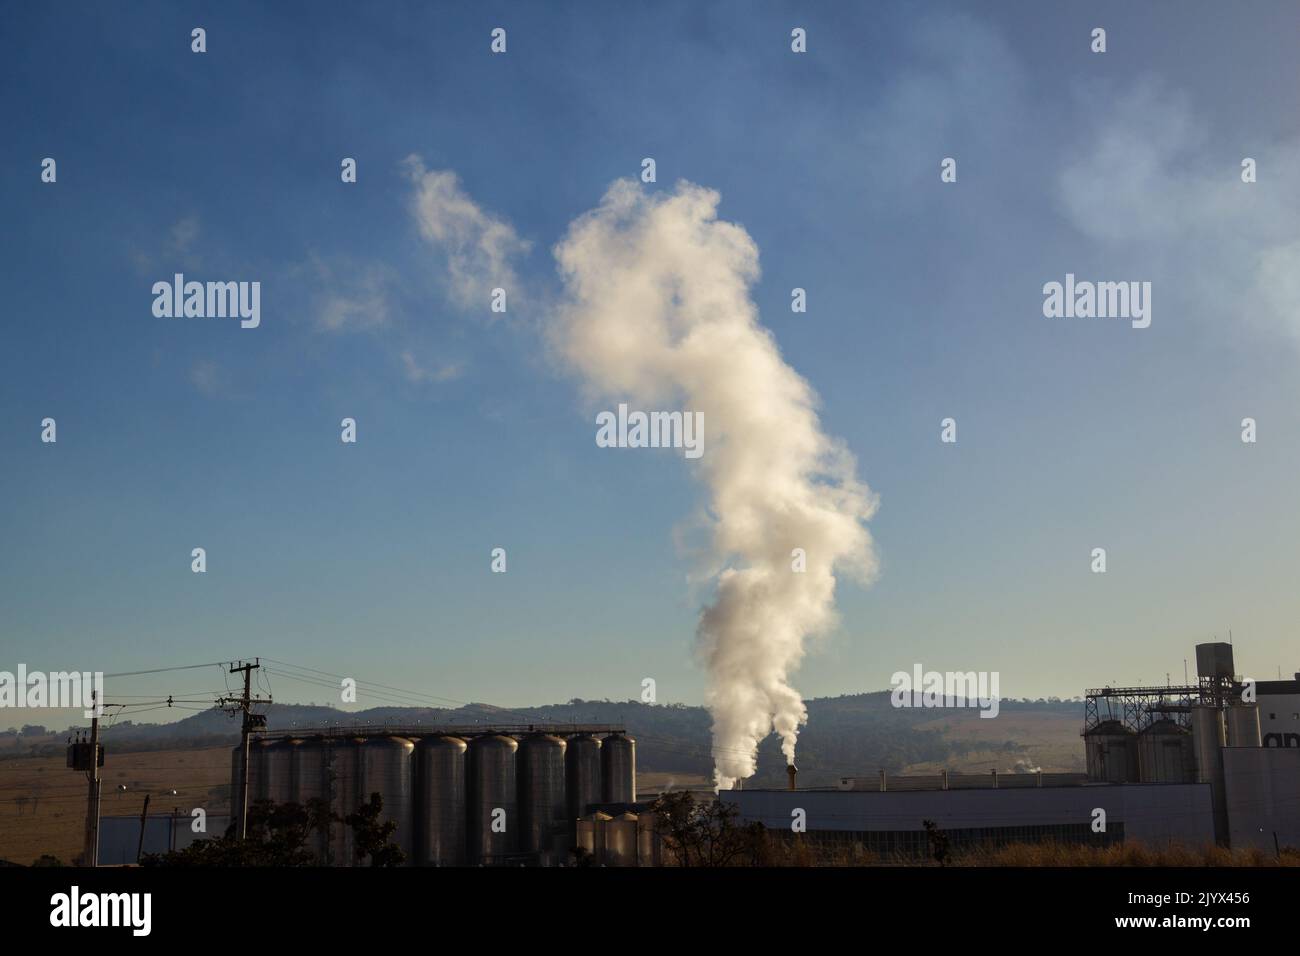 Goias, Brésil – 25 décembre 2021 : fumée sortant de la cheminée de l'usine. Pollution de l'air due à la fumée sortant des cheminées d'usine. Banque D'Images